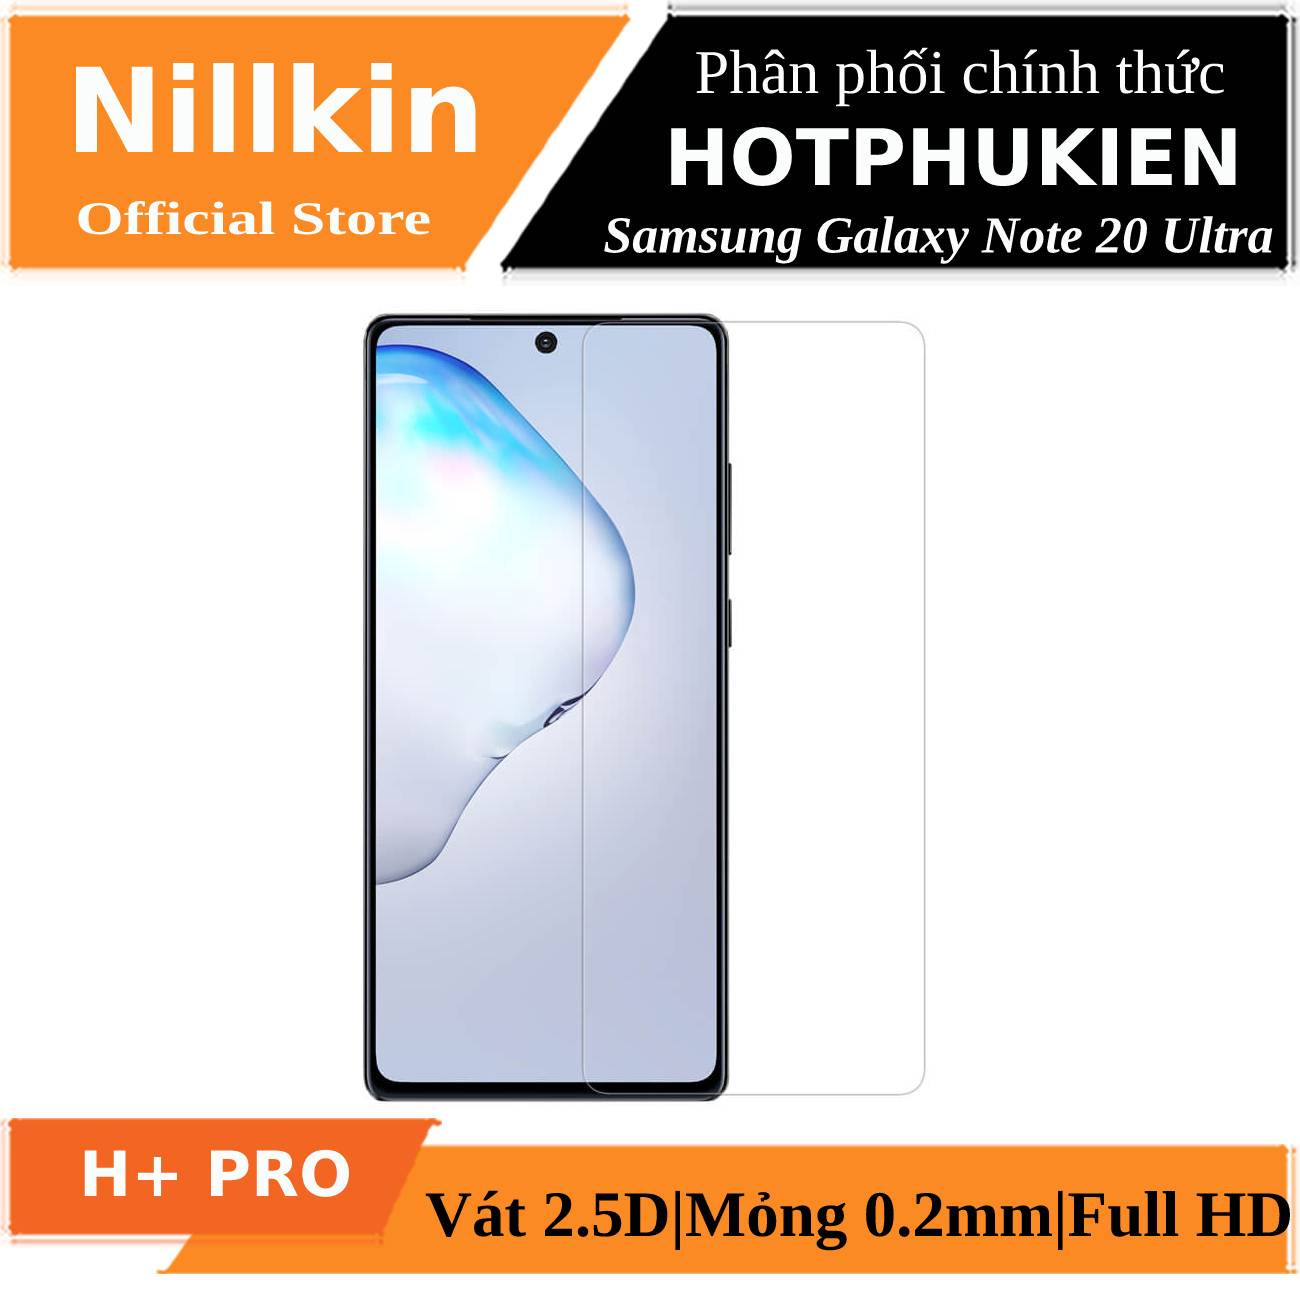 Miếng dán kính cường lực Samsung Galaxy Note 20 Ultra hiệu Nillkin Amazing H+ Pro